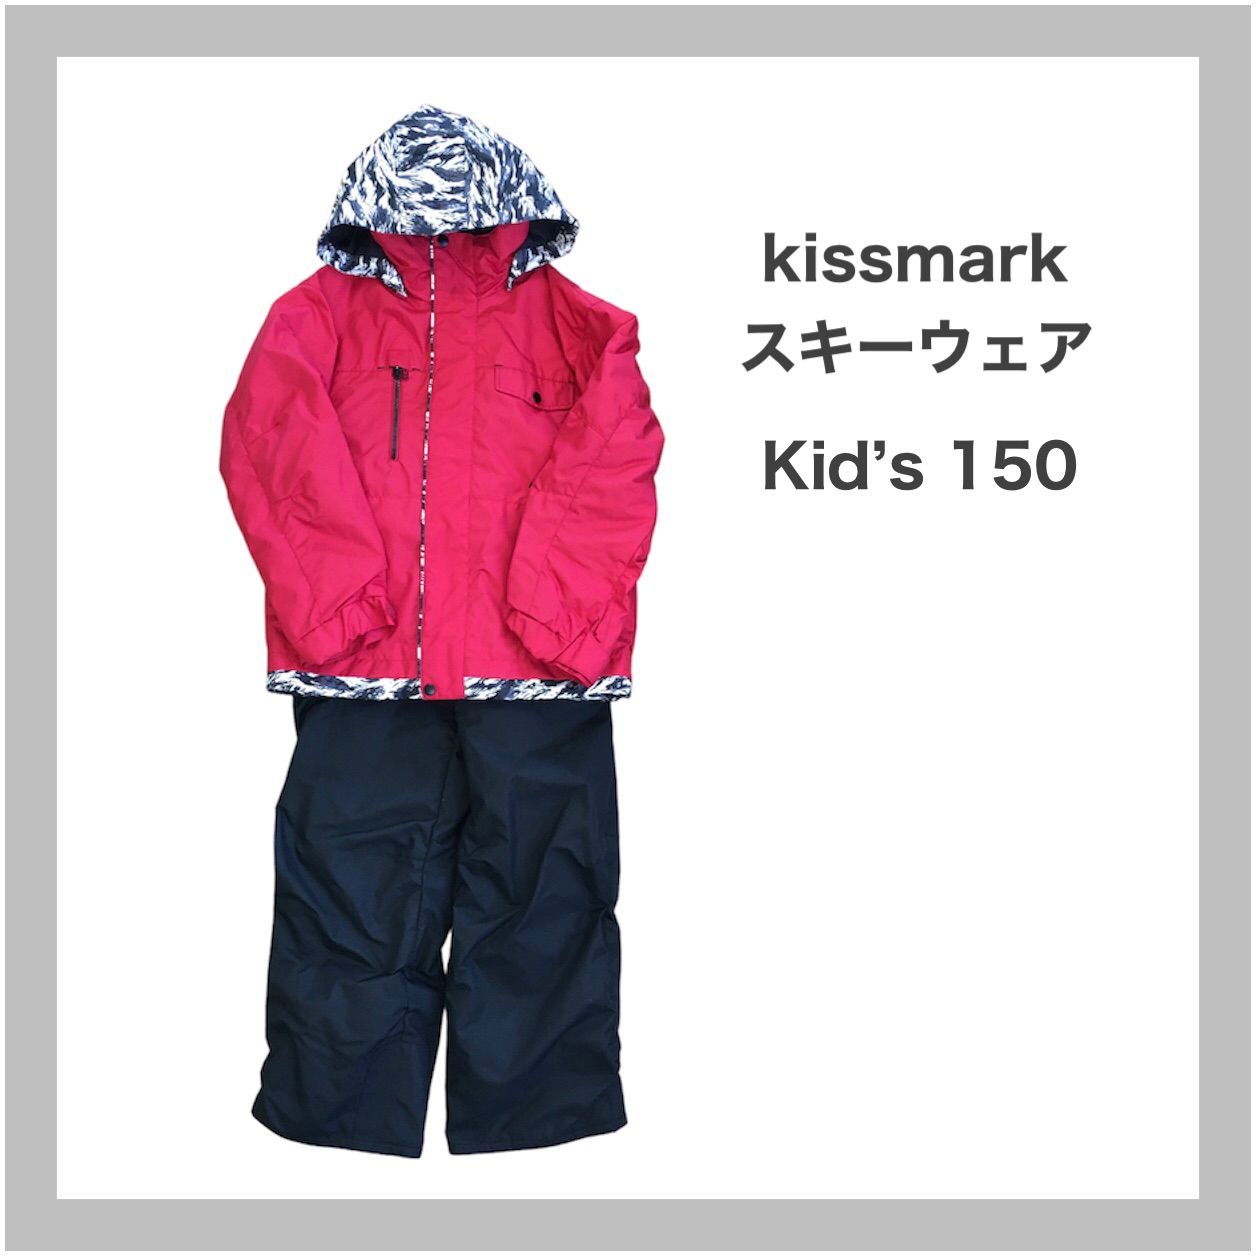 kissmark キスマーク スキー スノボウェア 上下 キッズ 子供 150